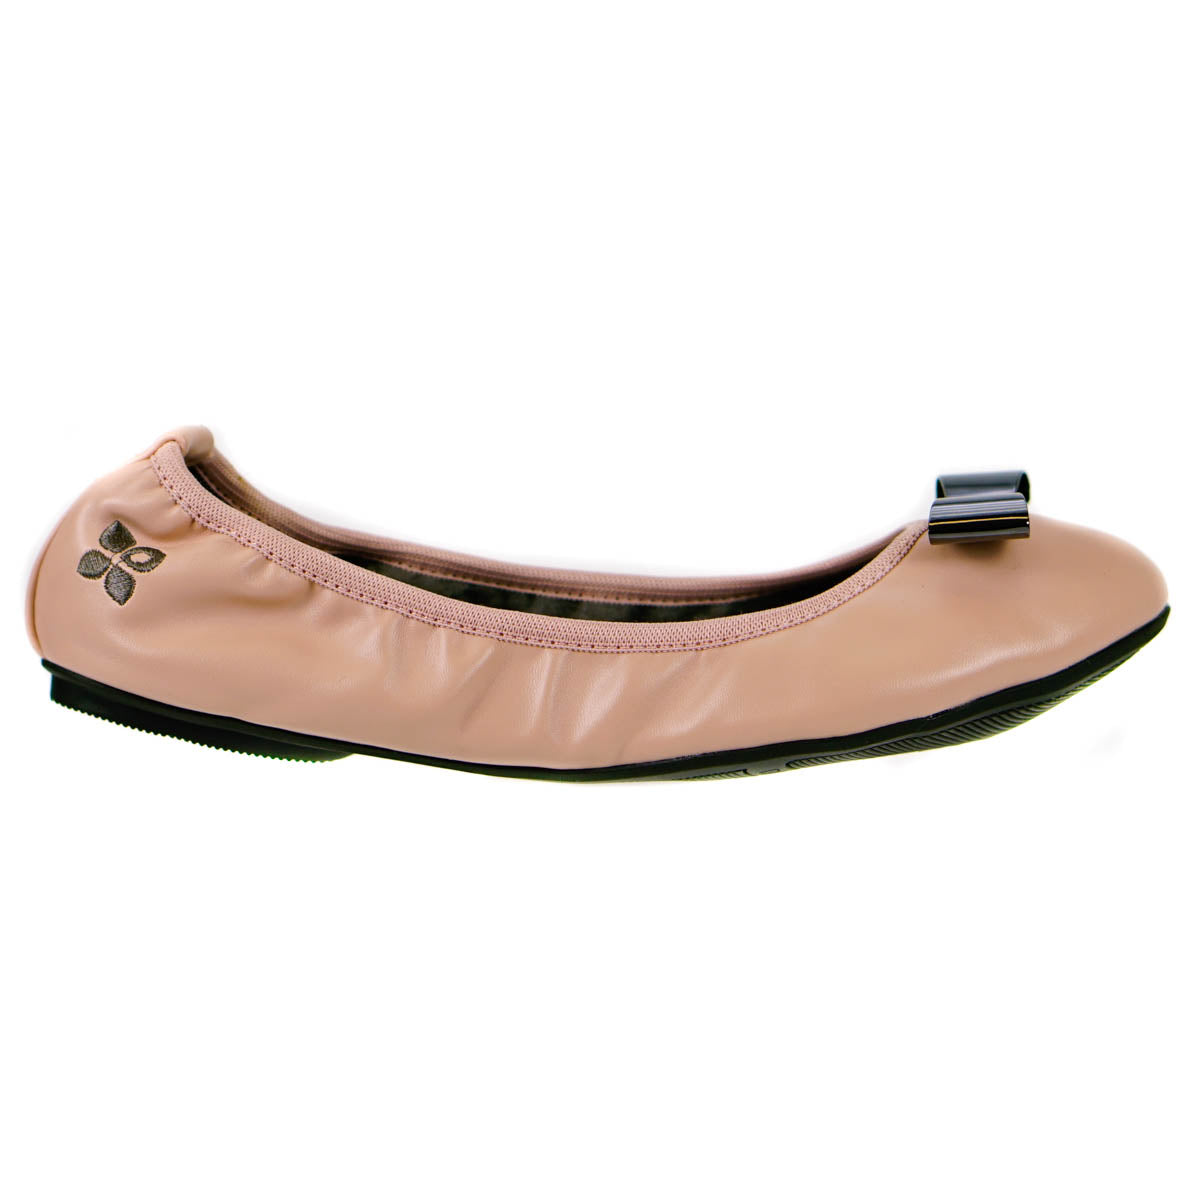 Butterfly Twists Chloe Fold Up Ballerina Shoes Dusky Pink Size 3 (36)